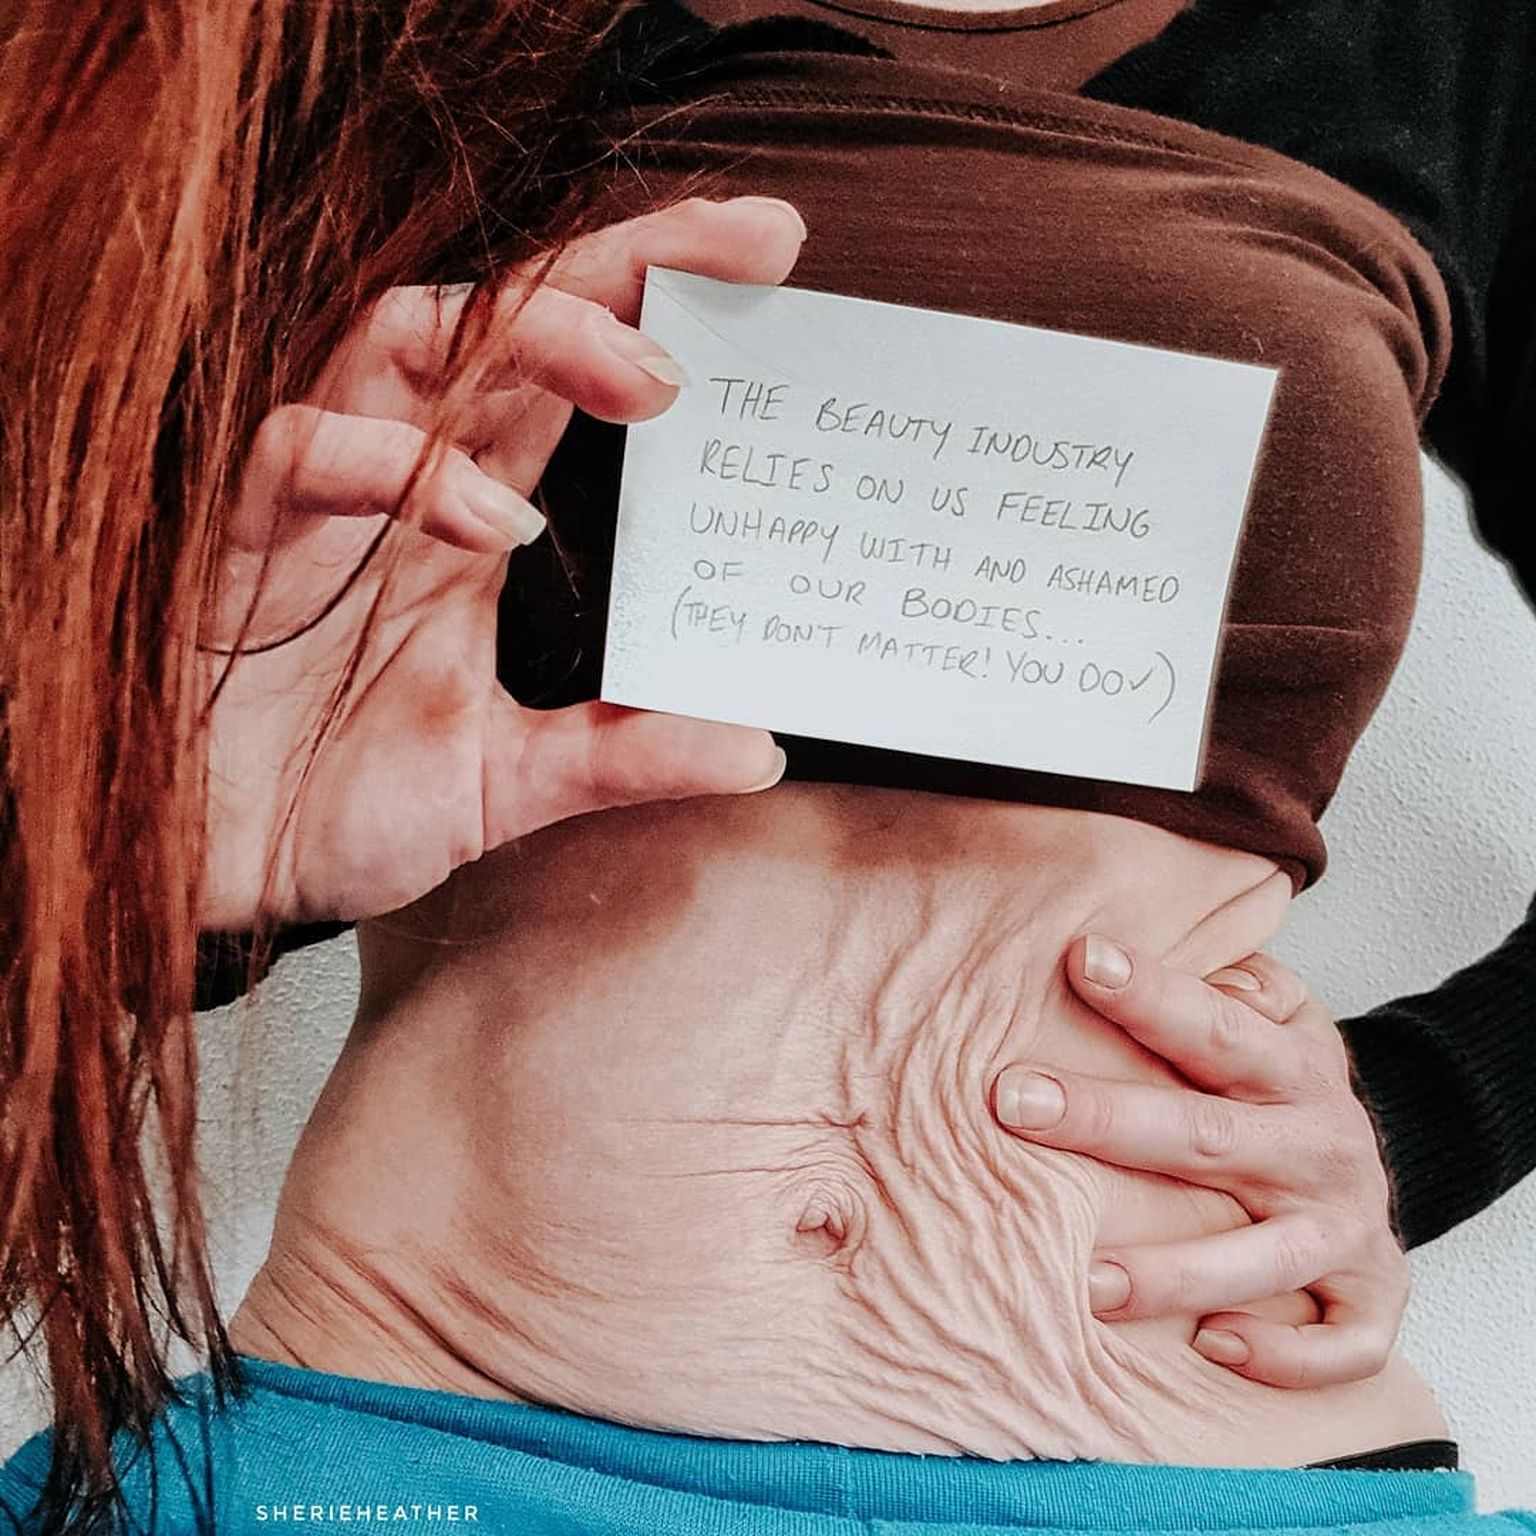 Lietotājas "sherieheather" Instagram ierraksts. Teksts bildē: "Skaistumkopšanas industrija balstās uz mūsu nedrošību un bailēm no sava ķermeņa. Viņi nav svarīgi - tu esi!"